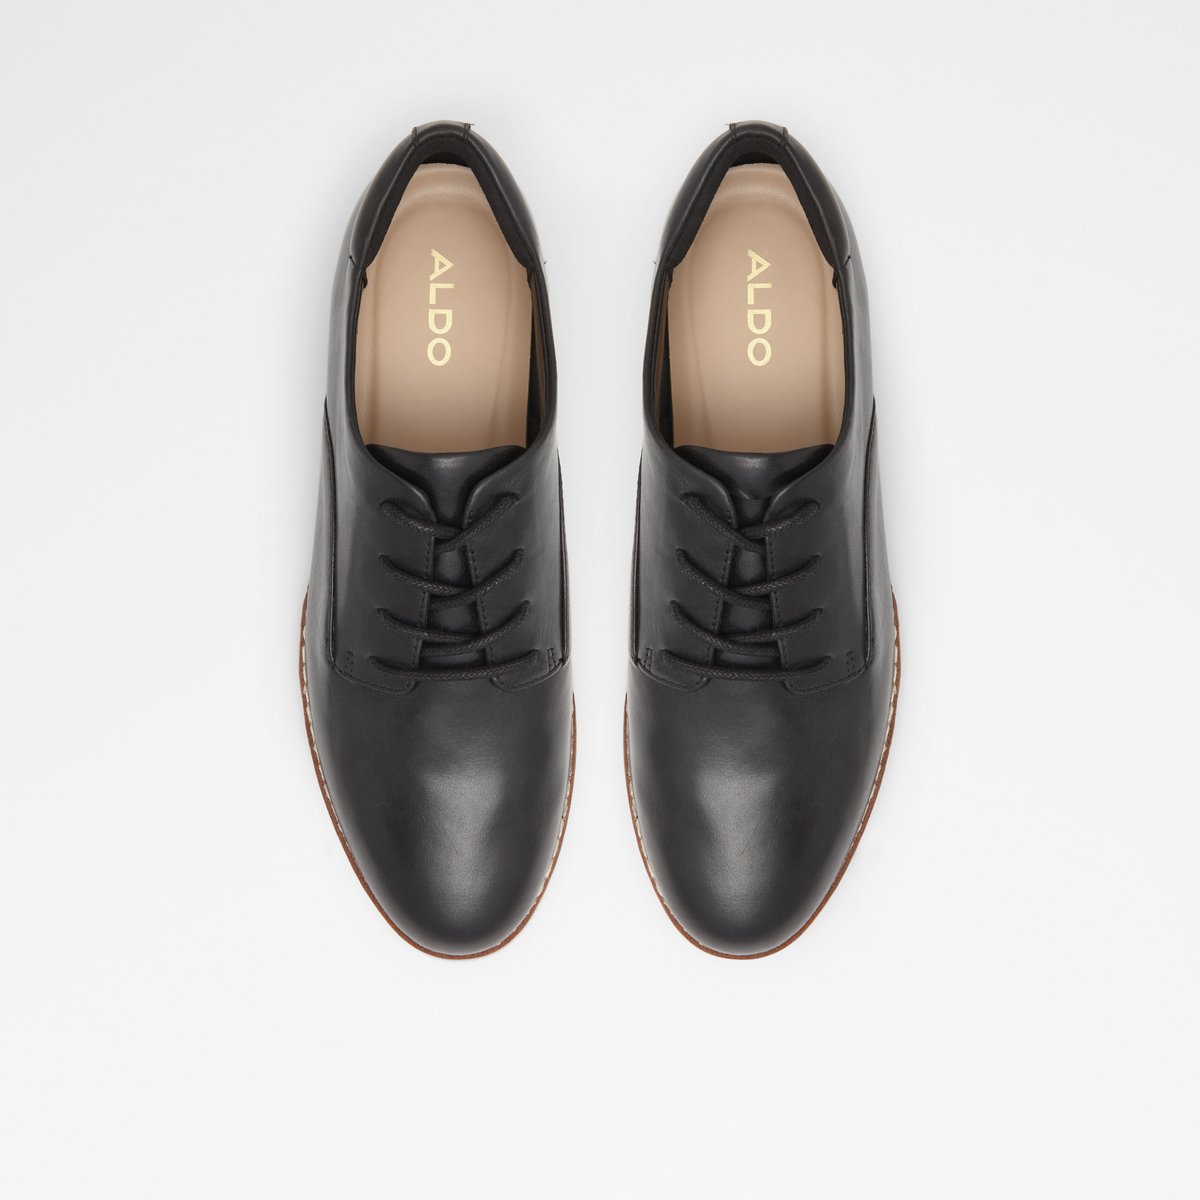 Black Alexisse Womens Oxford Flats Size 8.5 ALDO Women Shoes Flat Shoes Formal Shoes 